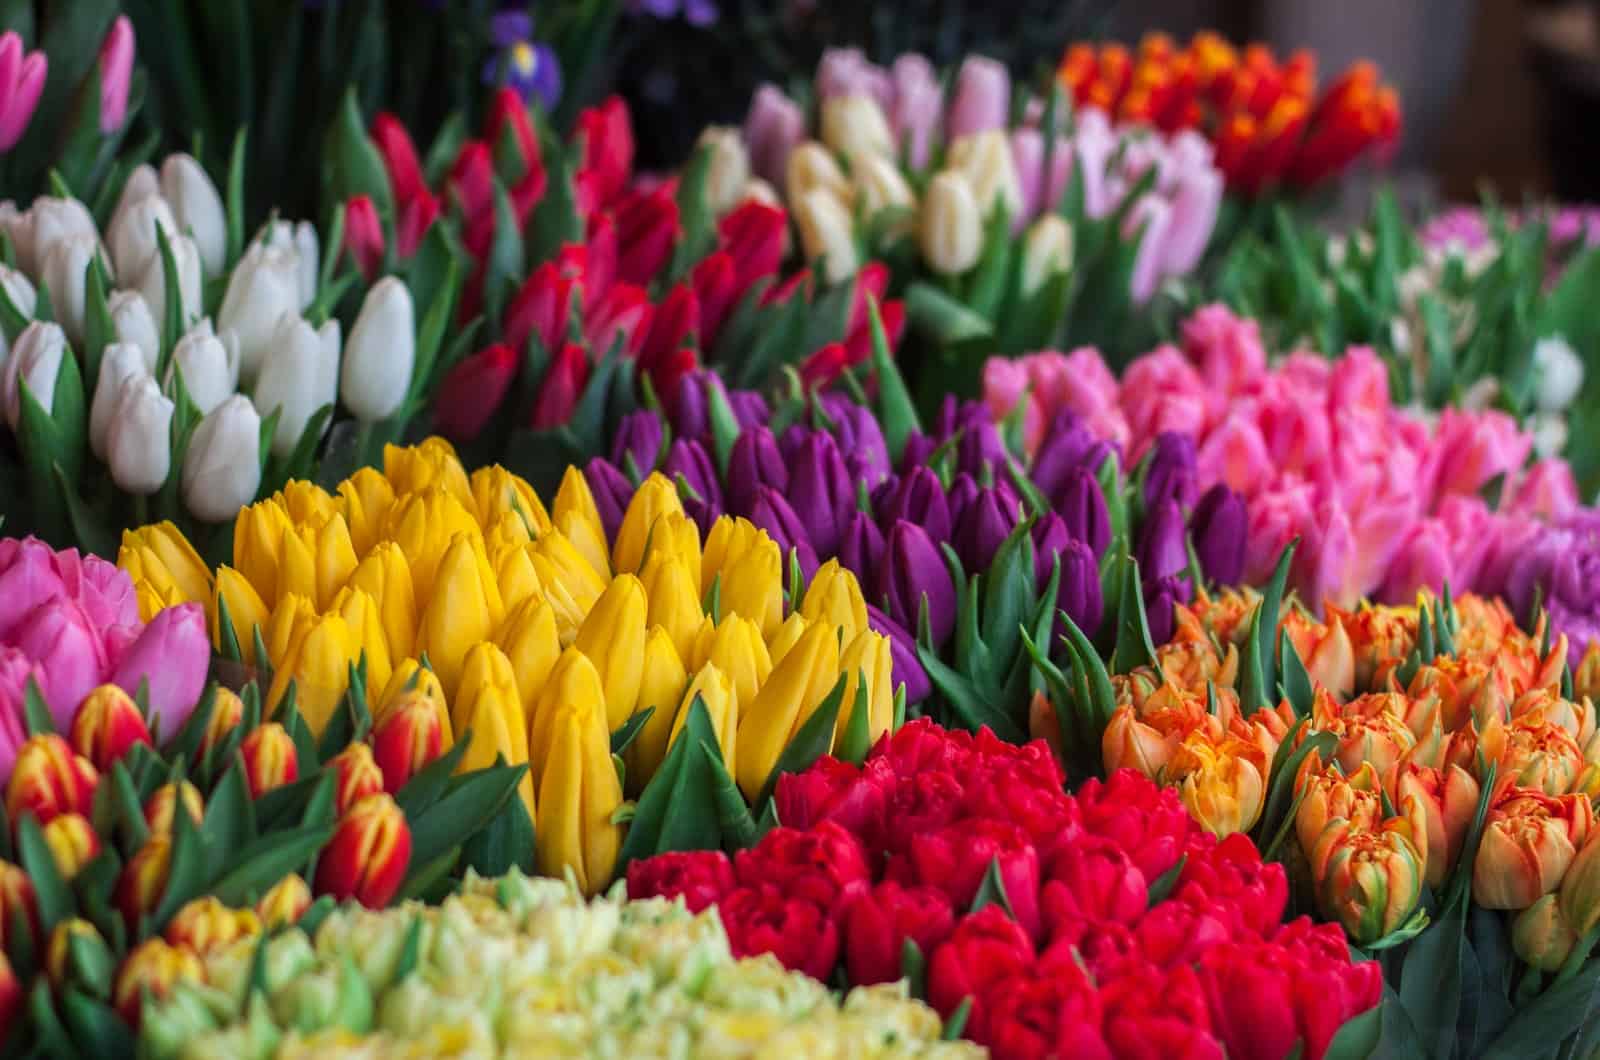 flower market full of tulips